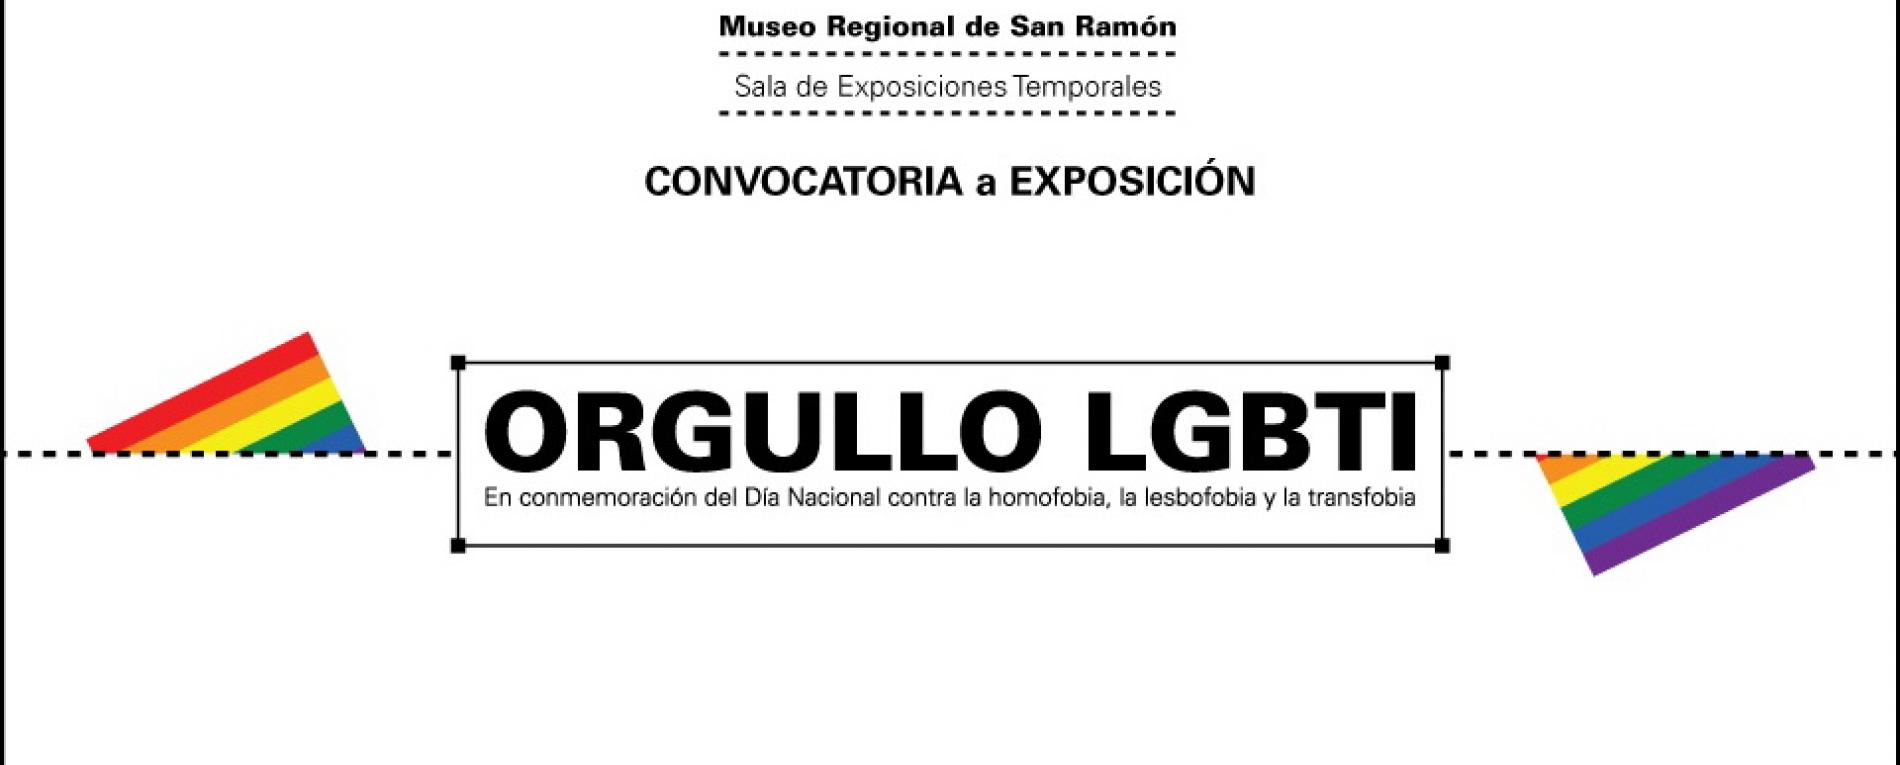 SET abre convocatoria para exposición Orgullo LGBTI 